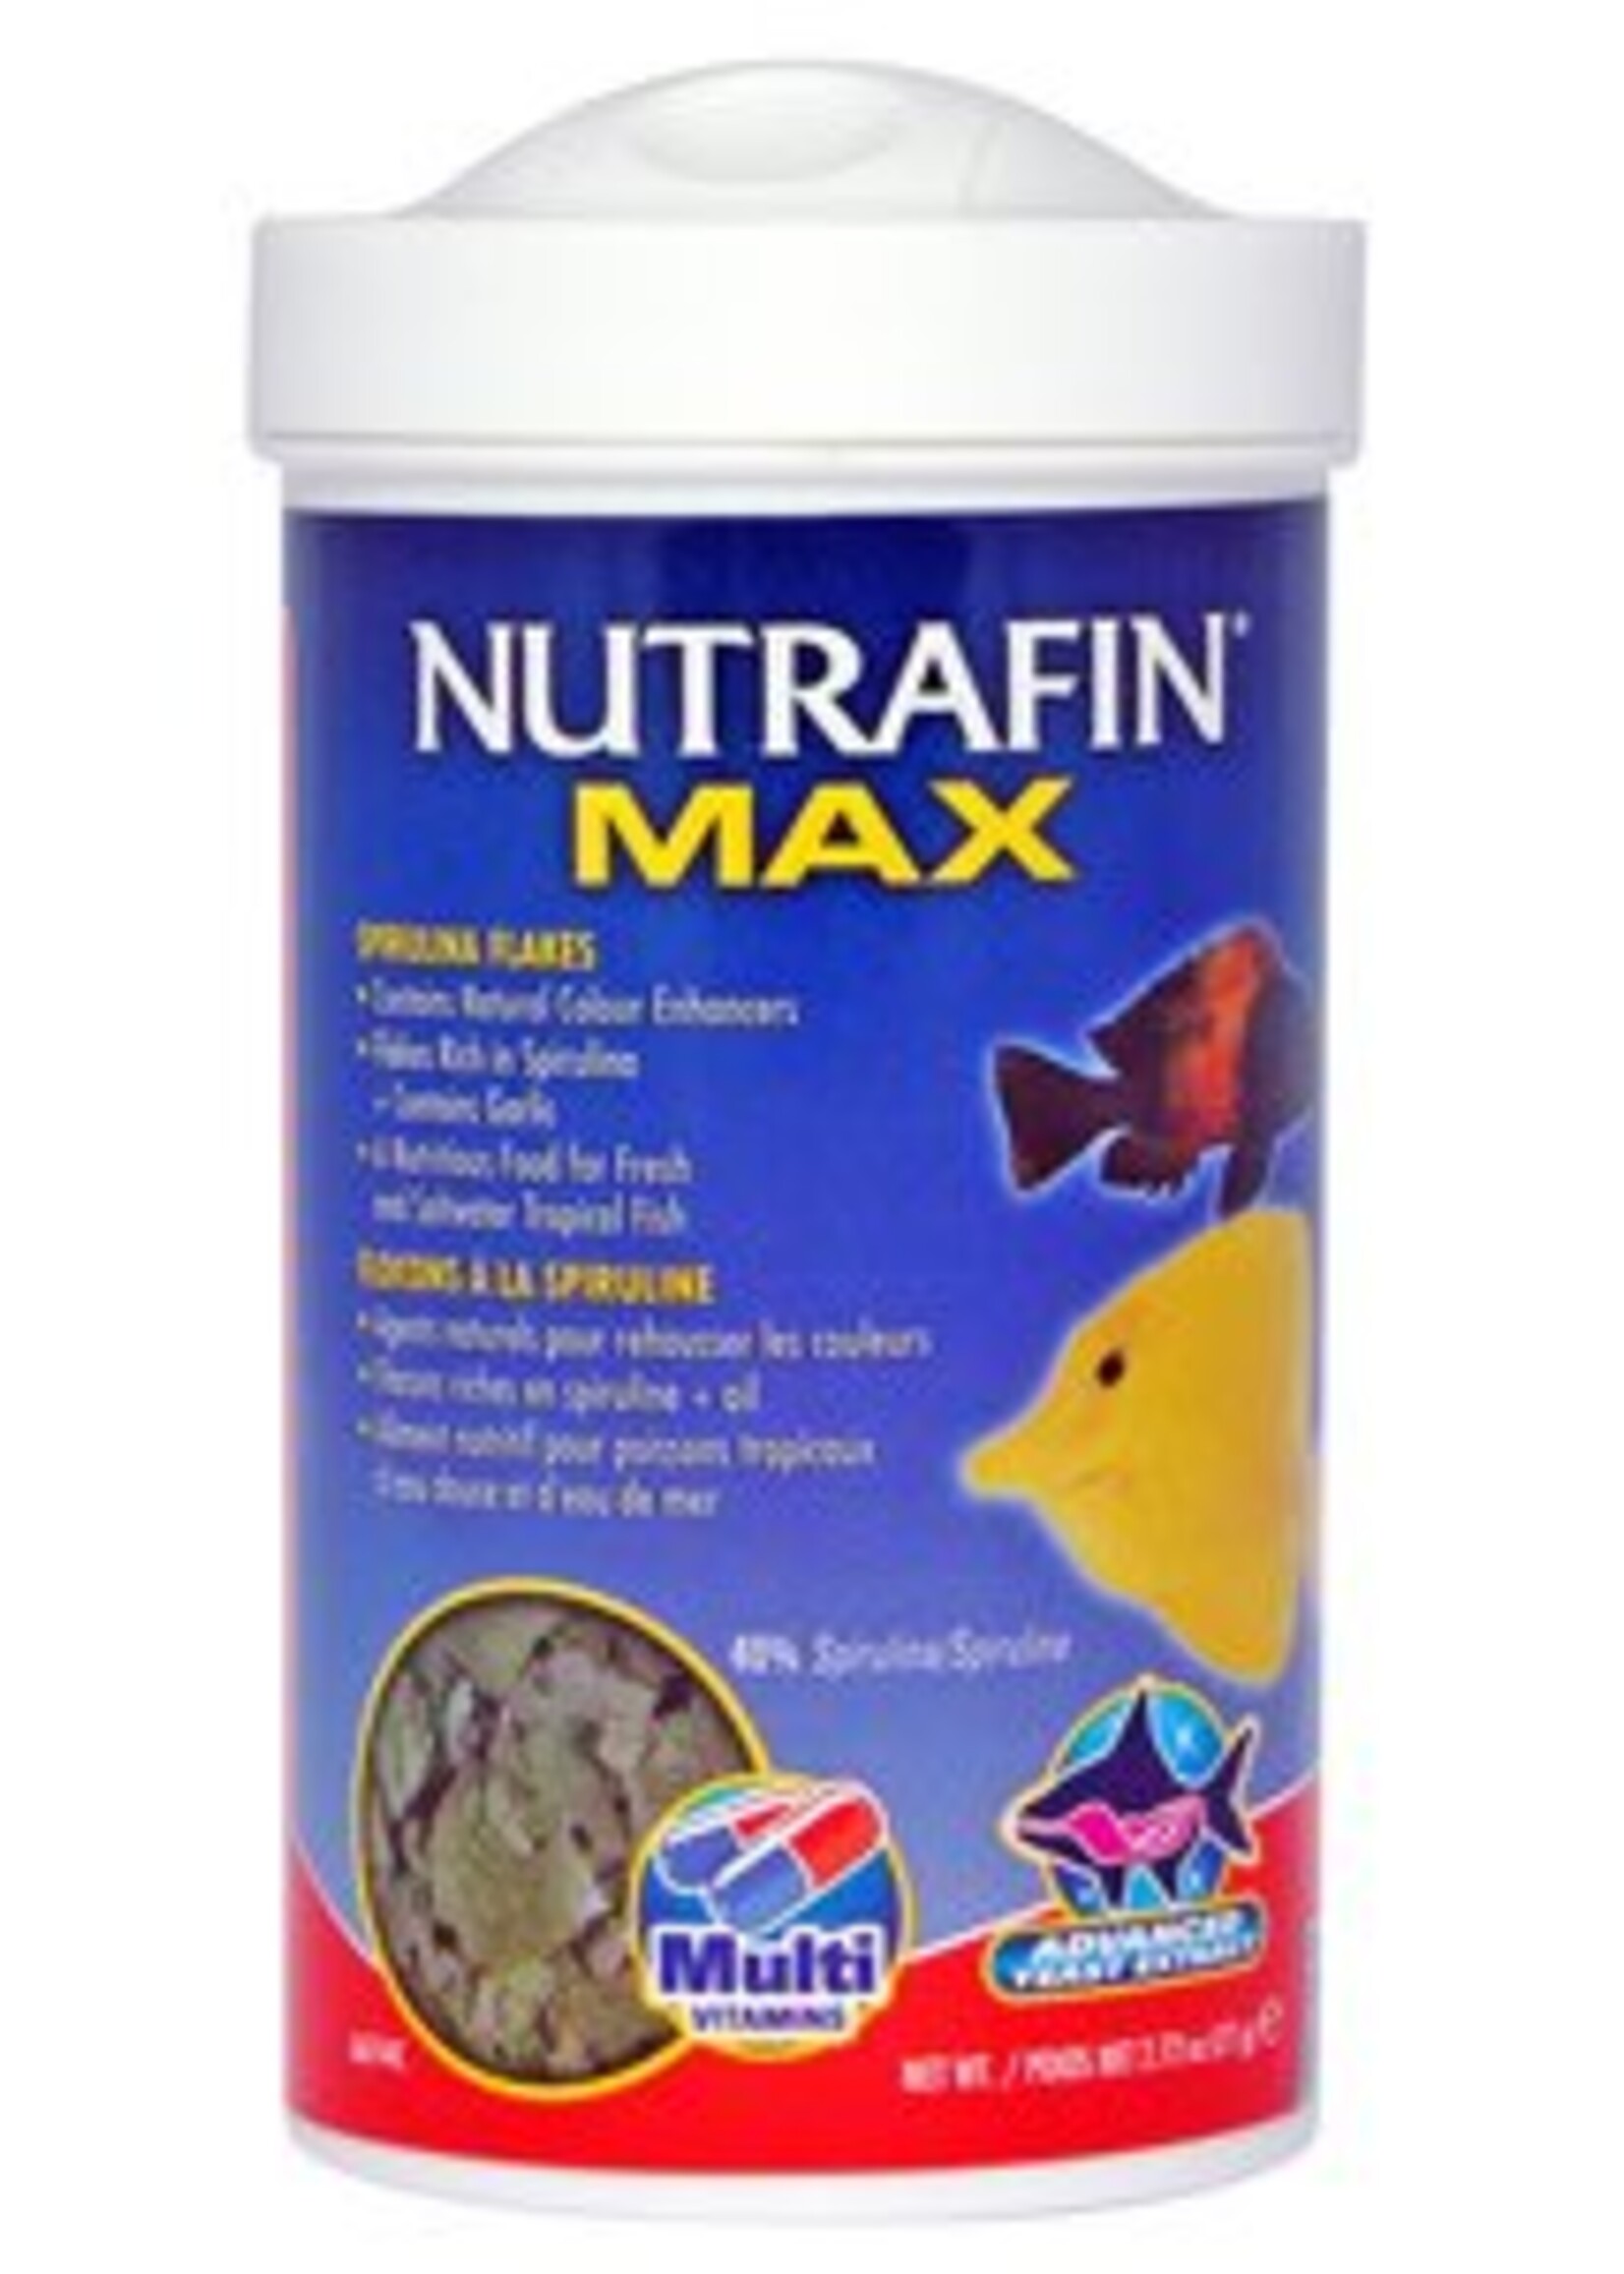 Nutrafin NFM Spirulina Flakes, 77g (2.72oz)